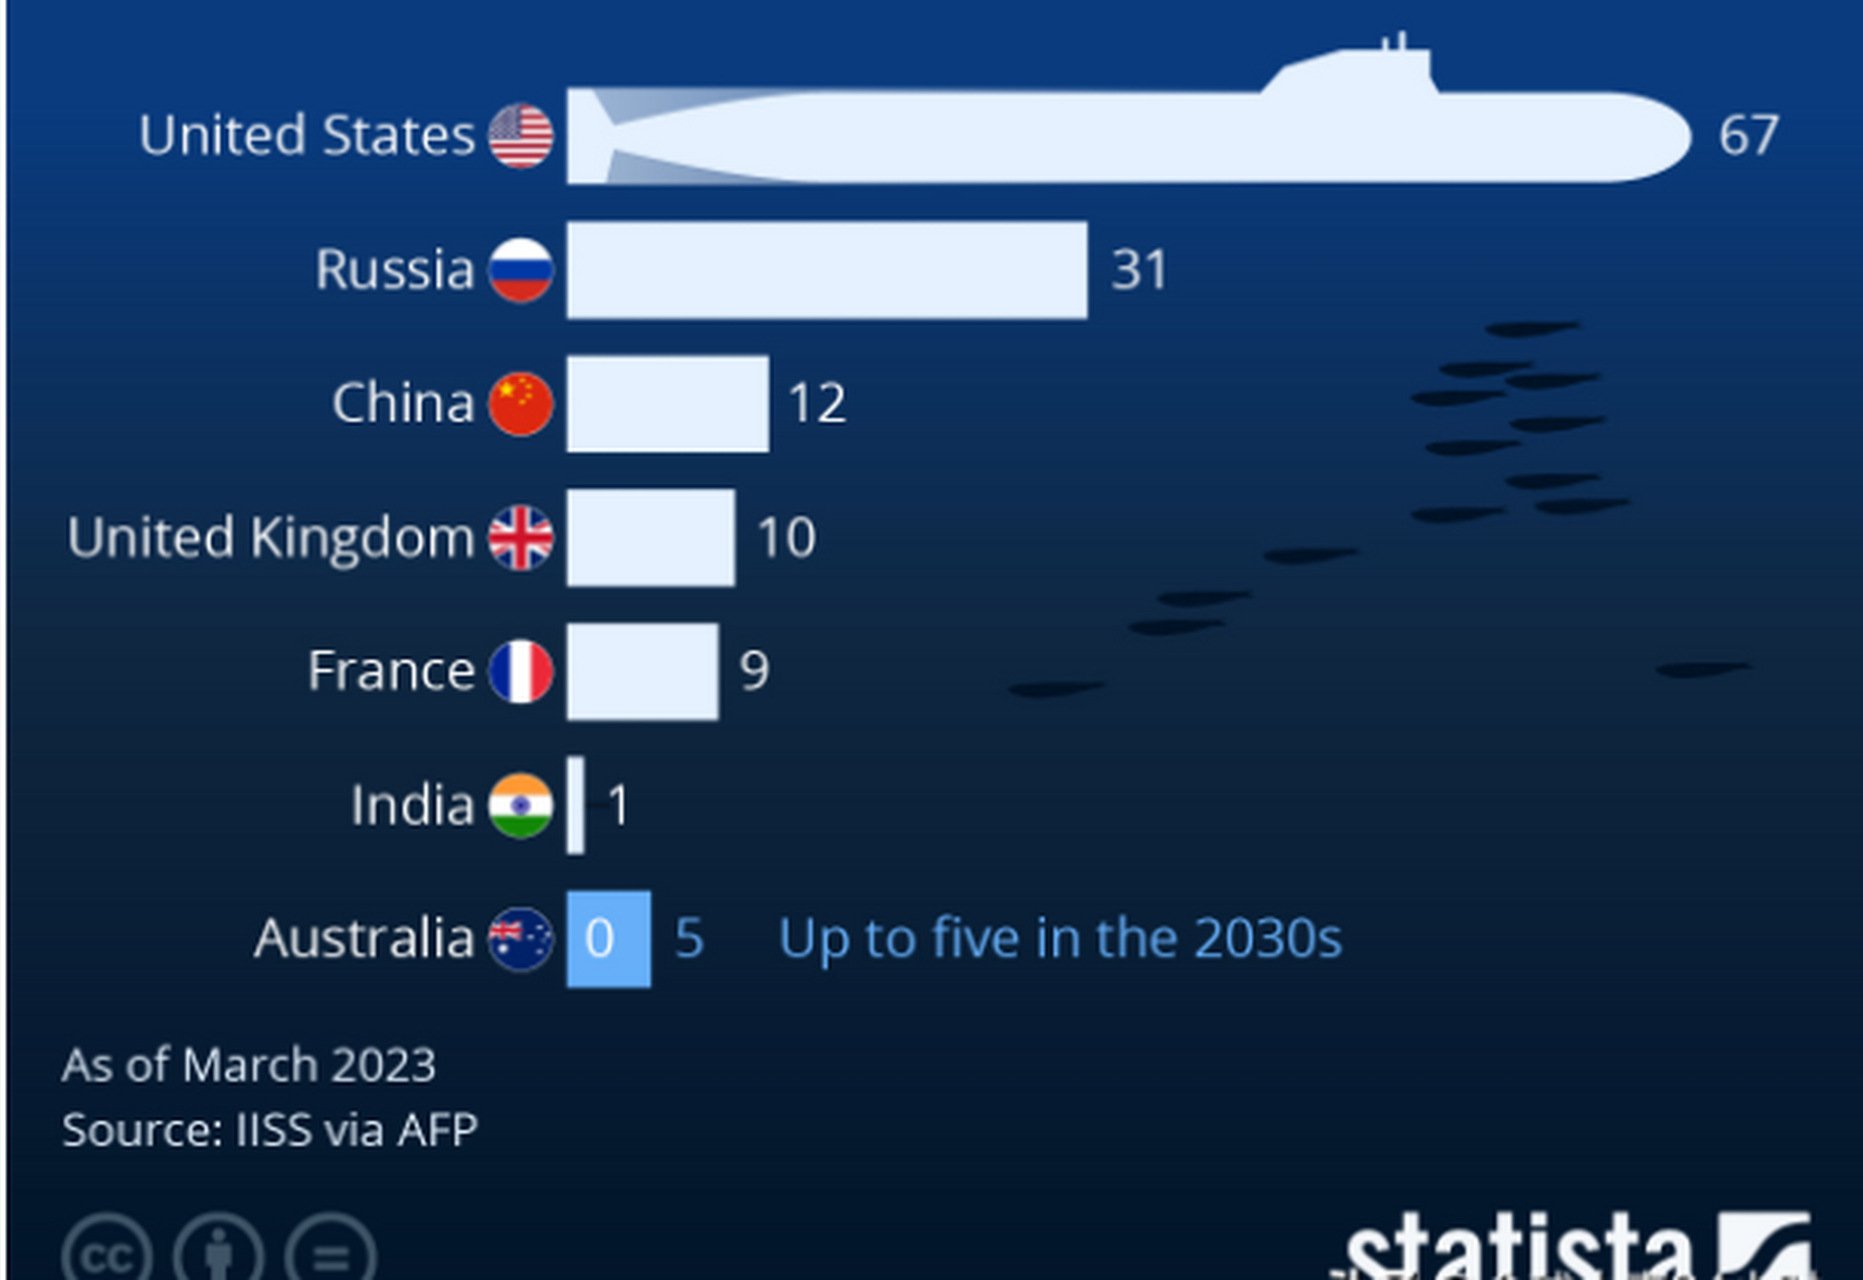 各国核潜艇大小对比图片